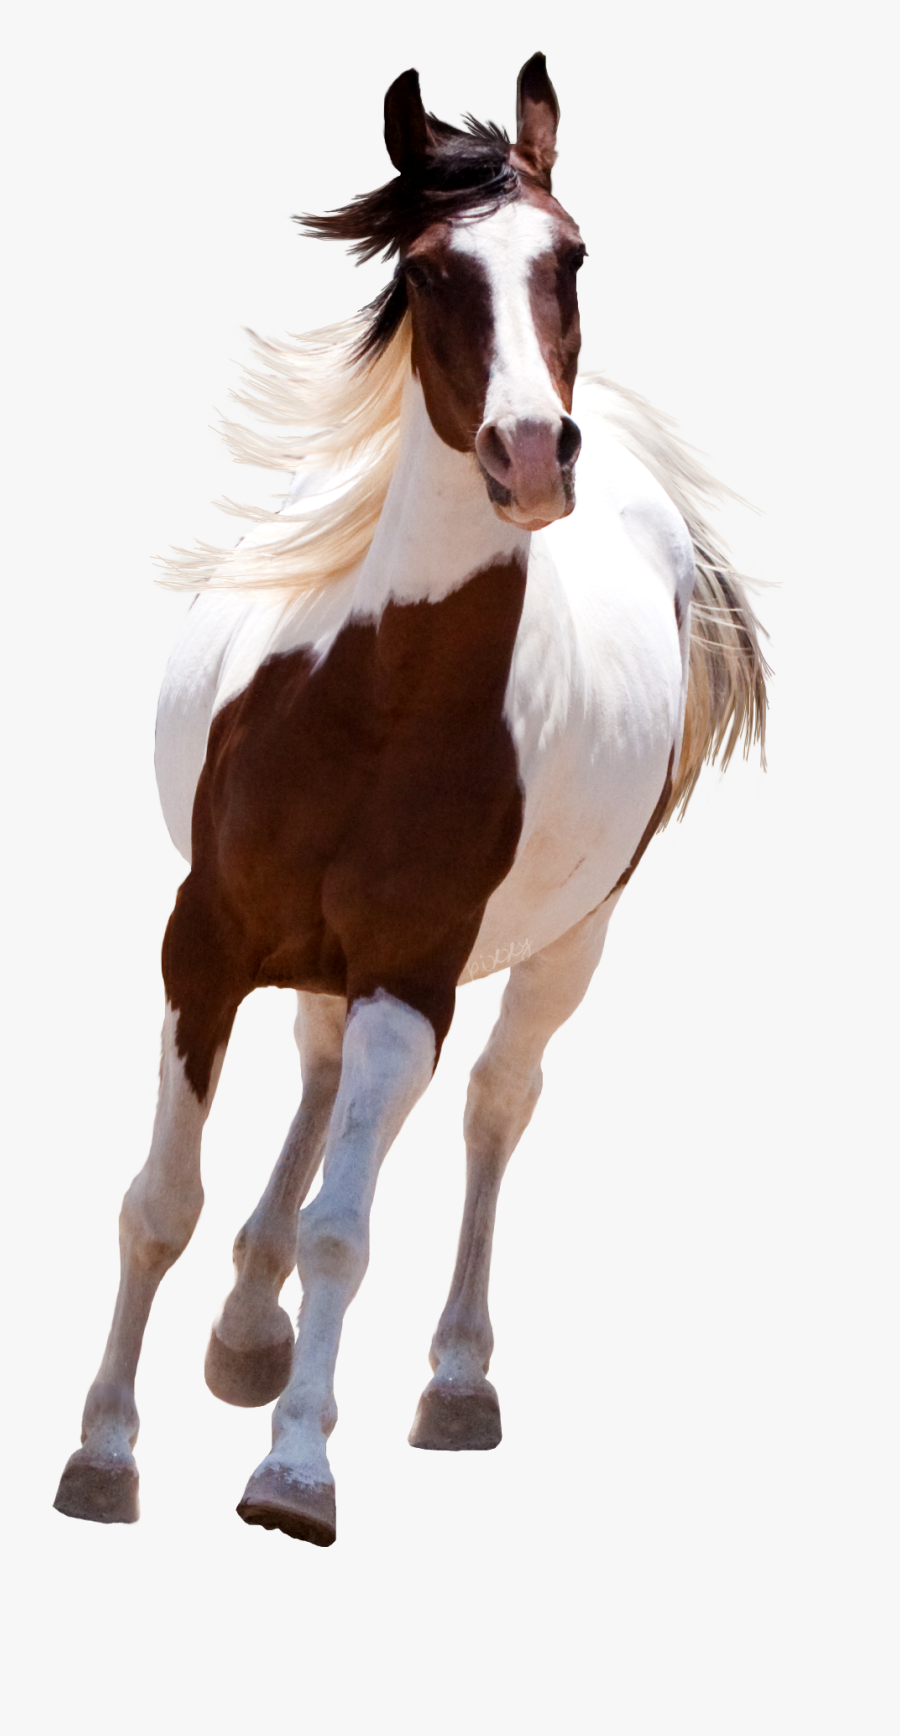 Running Png R No - Picsart Horse Png Hd, Transparent Clipart